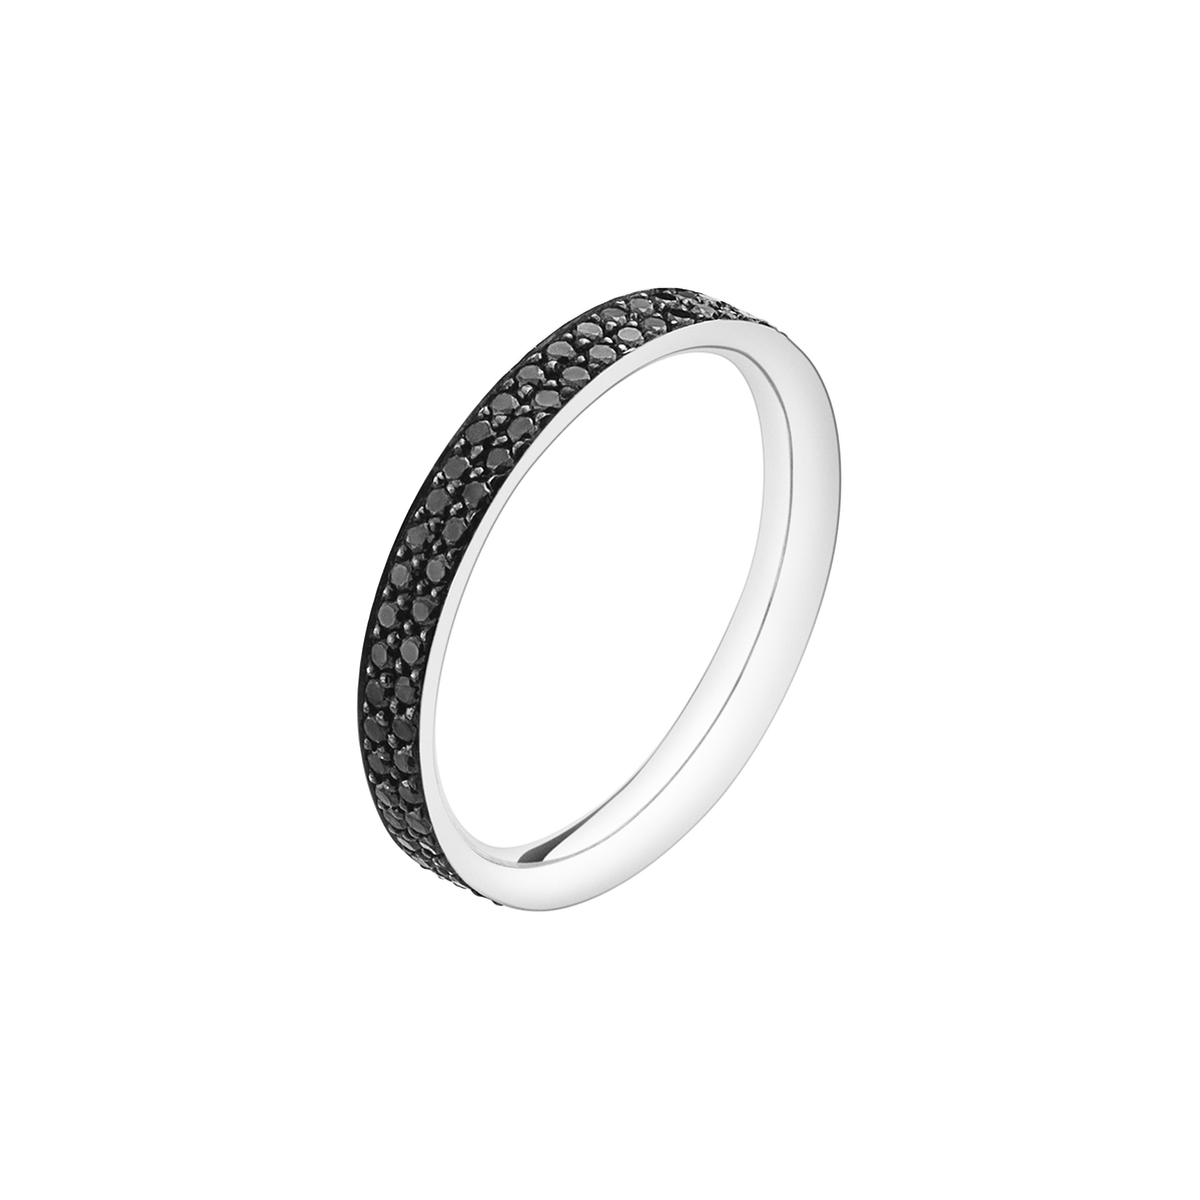 længde Fortov Modernisering Magic ring i 18 kt. hvidguld med sorte diamanter